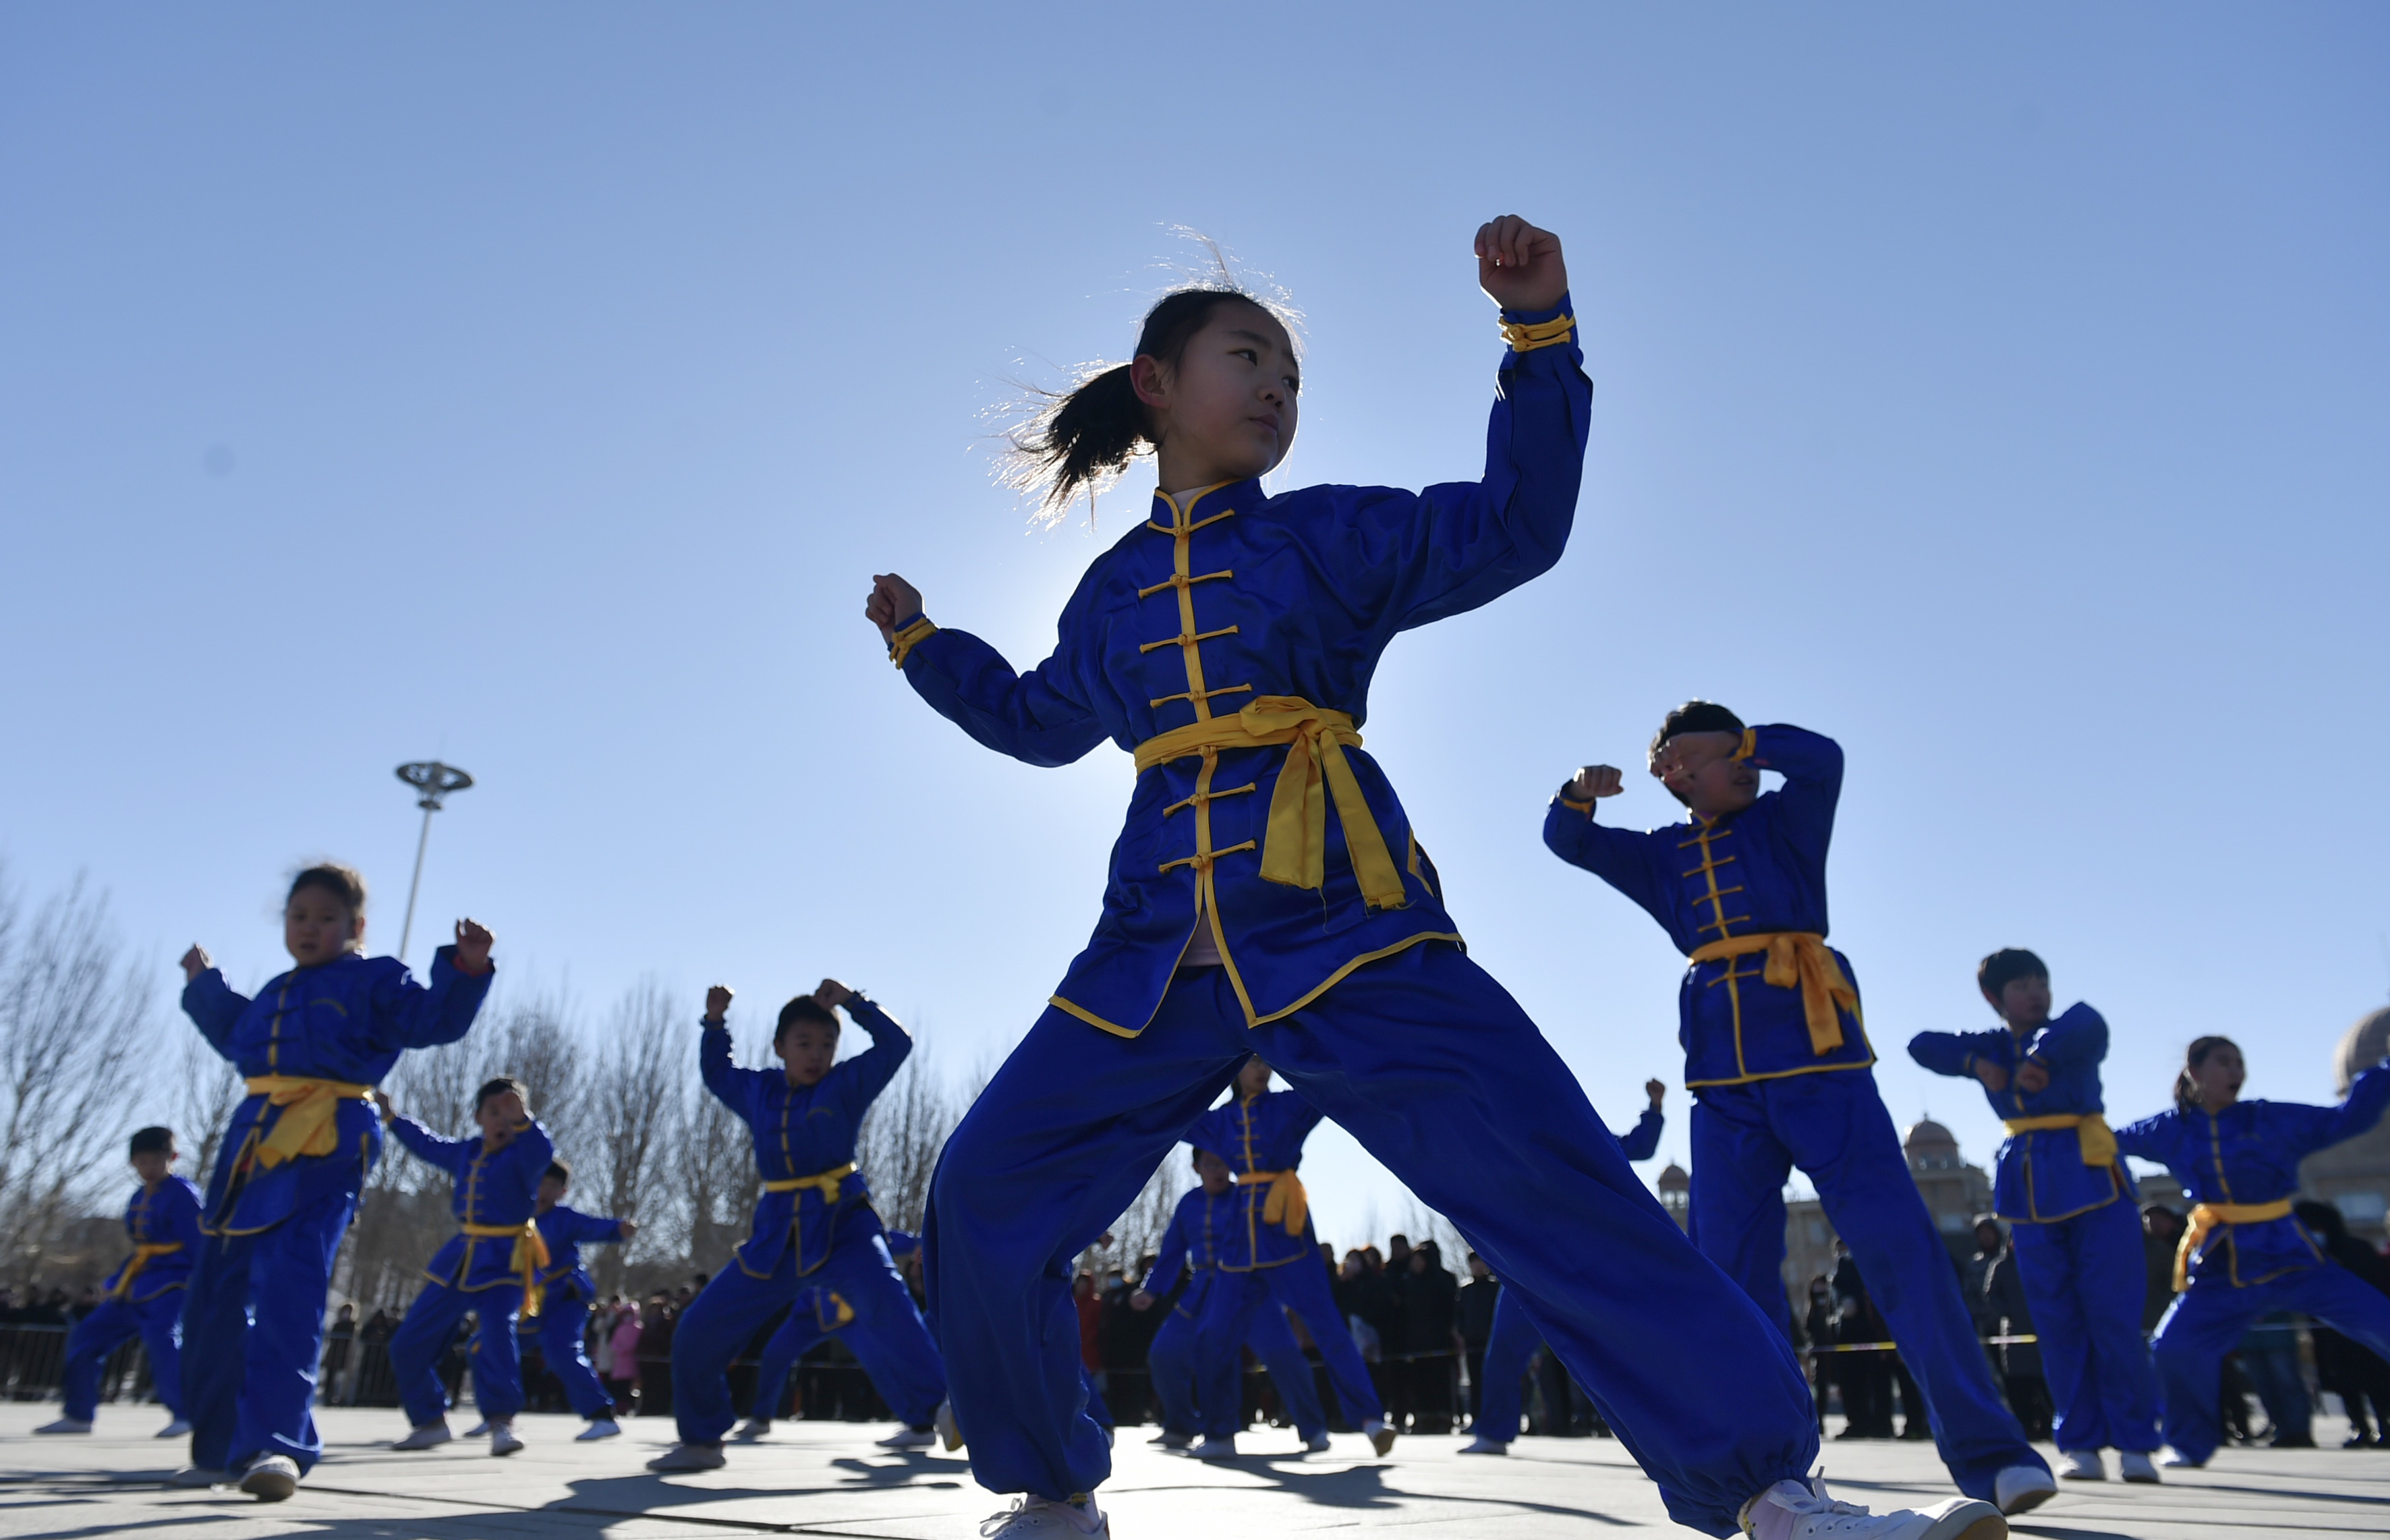 2月16日,来自三河市燕青拳培训的学员们在表演燕青拳.